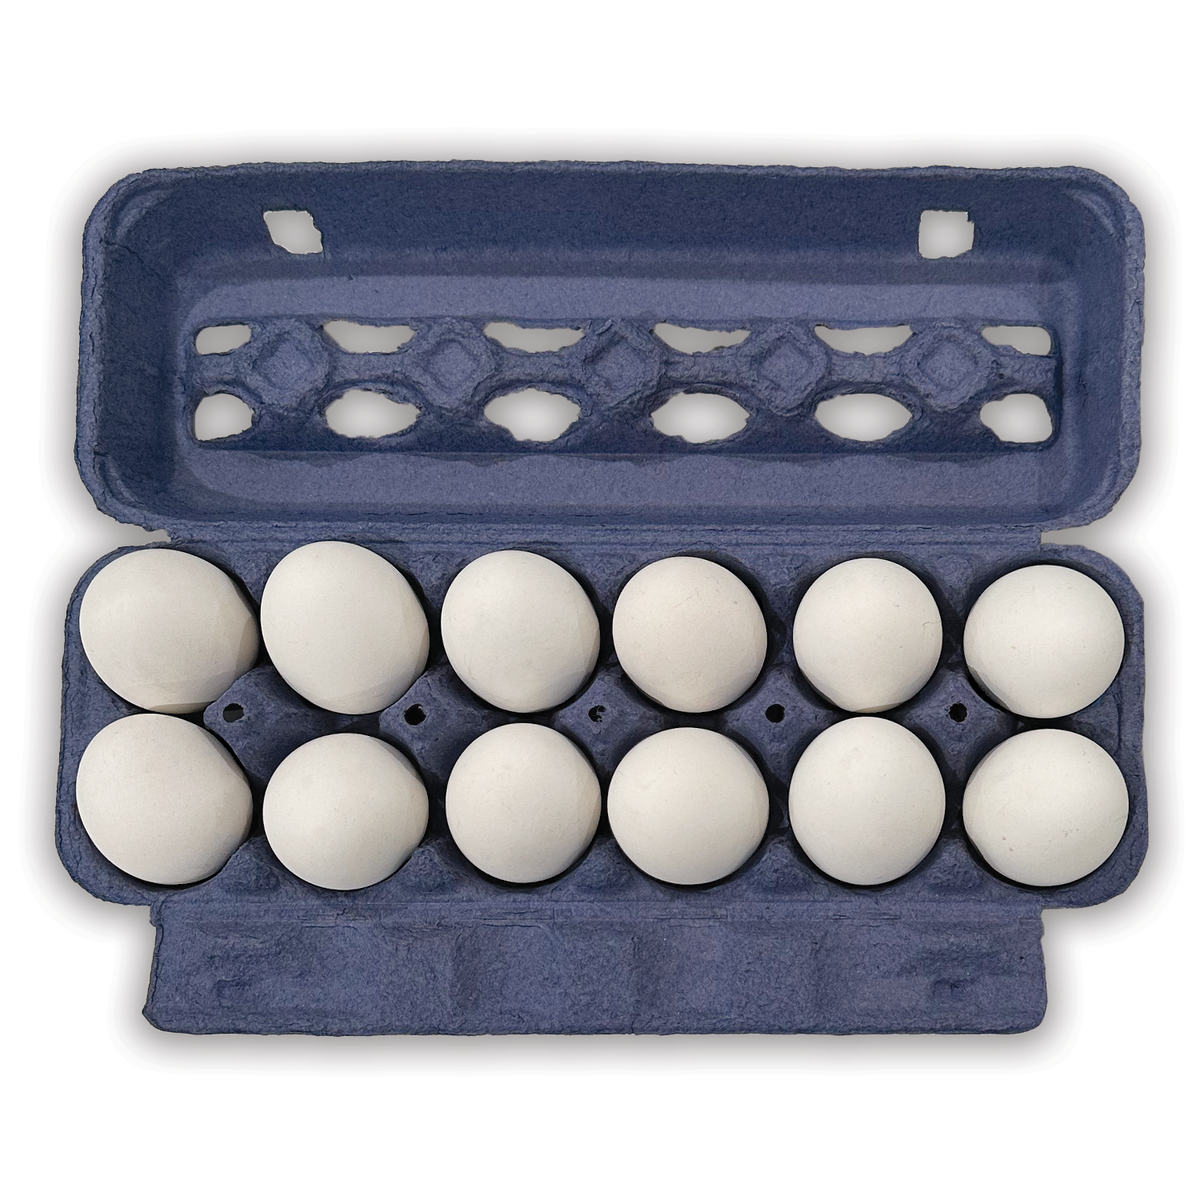 Egg Cartons - 12 Eggs